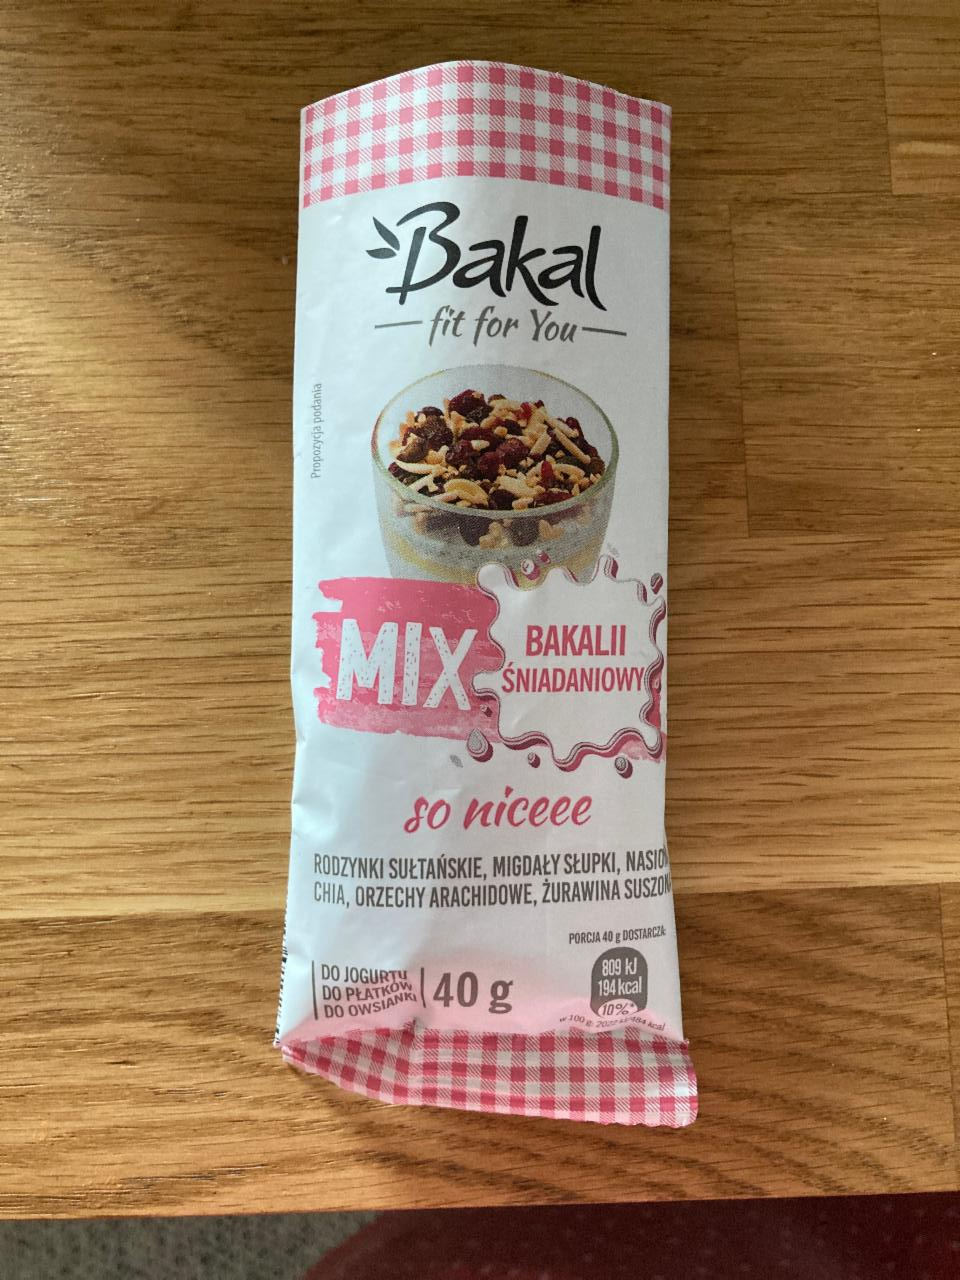 Fotografie - Mix Bakalii sniadaniowy so niceee Bakal fit for you